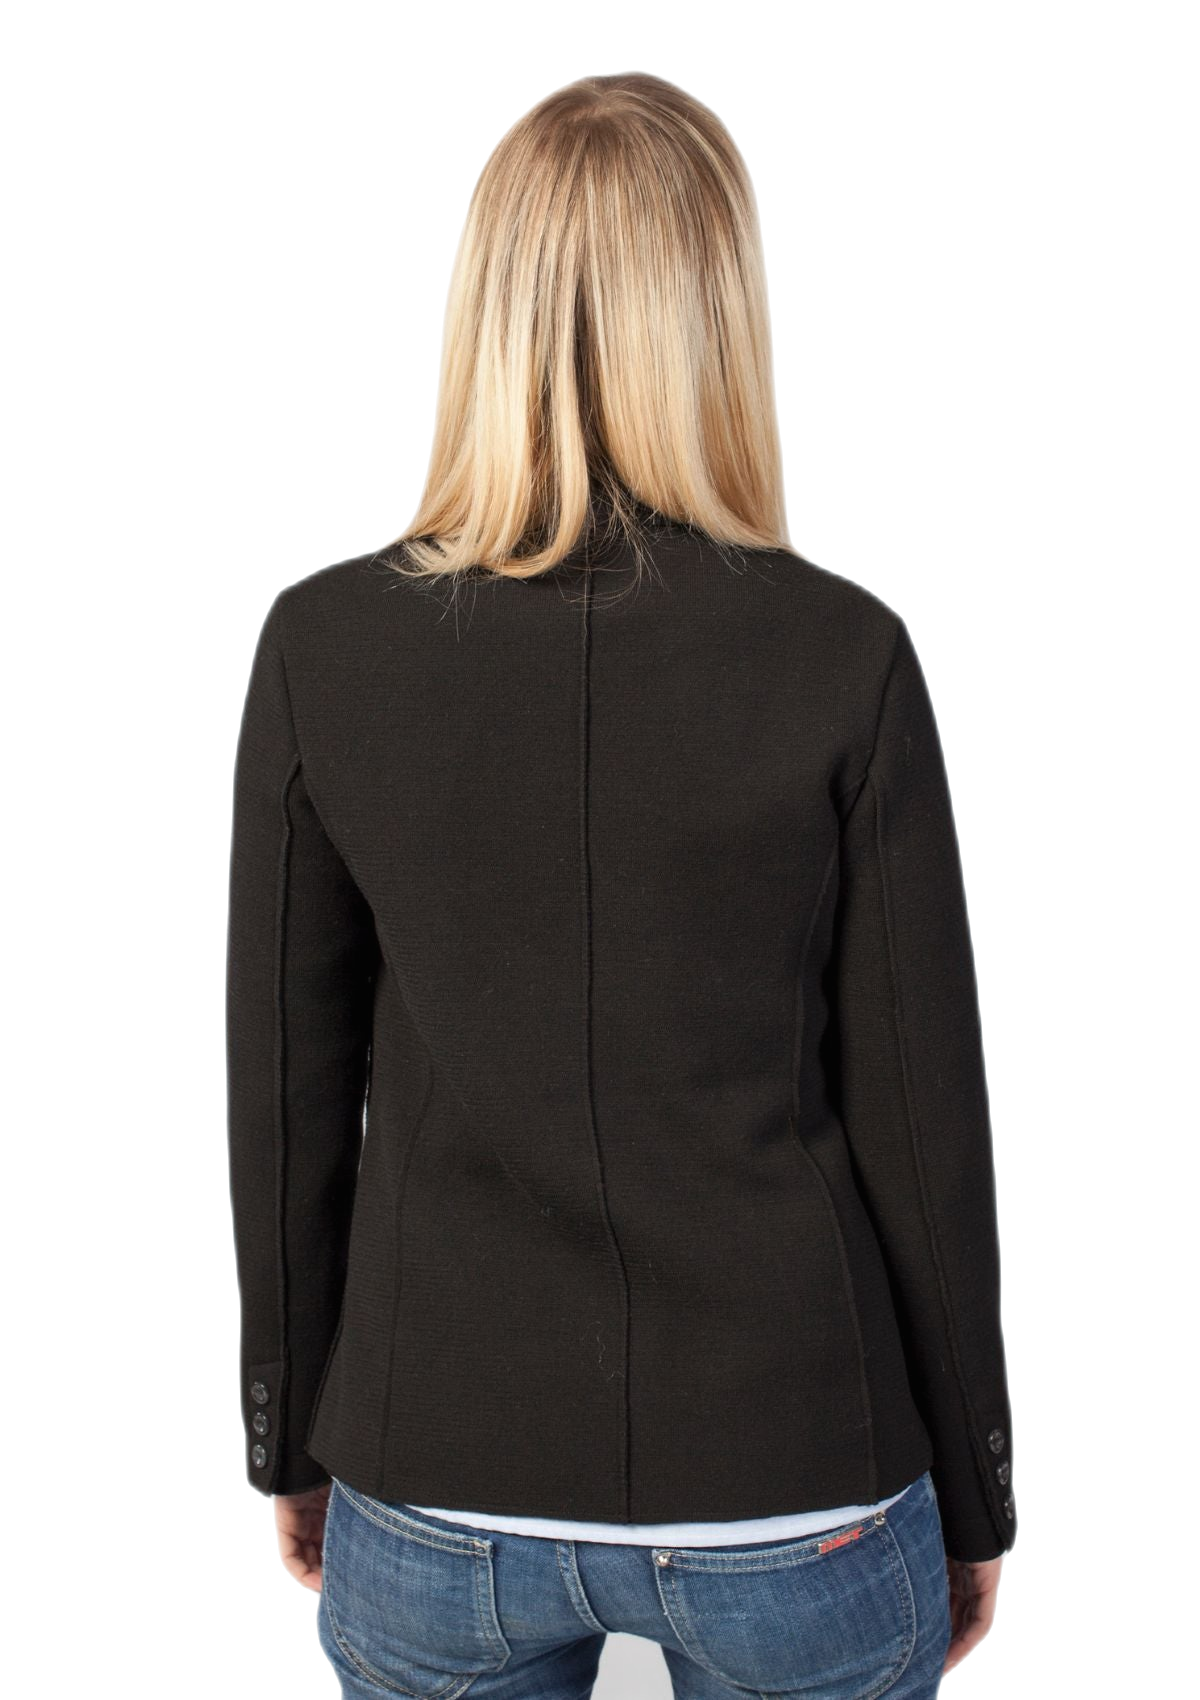 retro giacca donna in lana merino colore nero